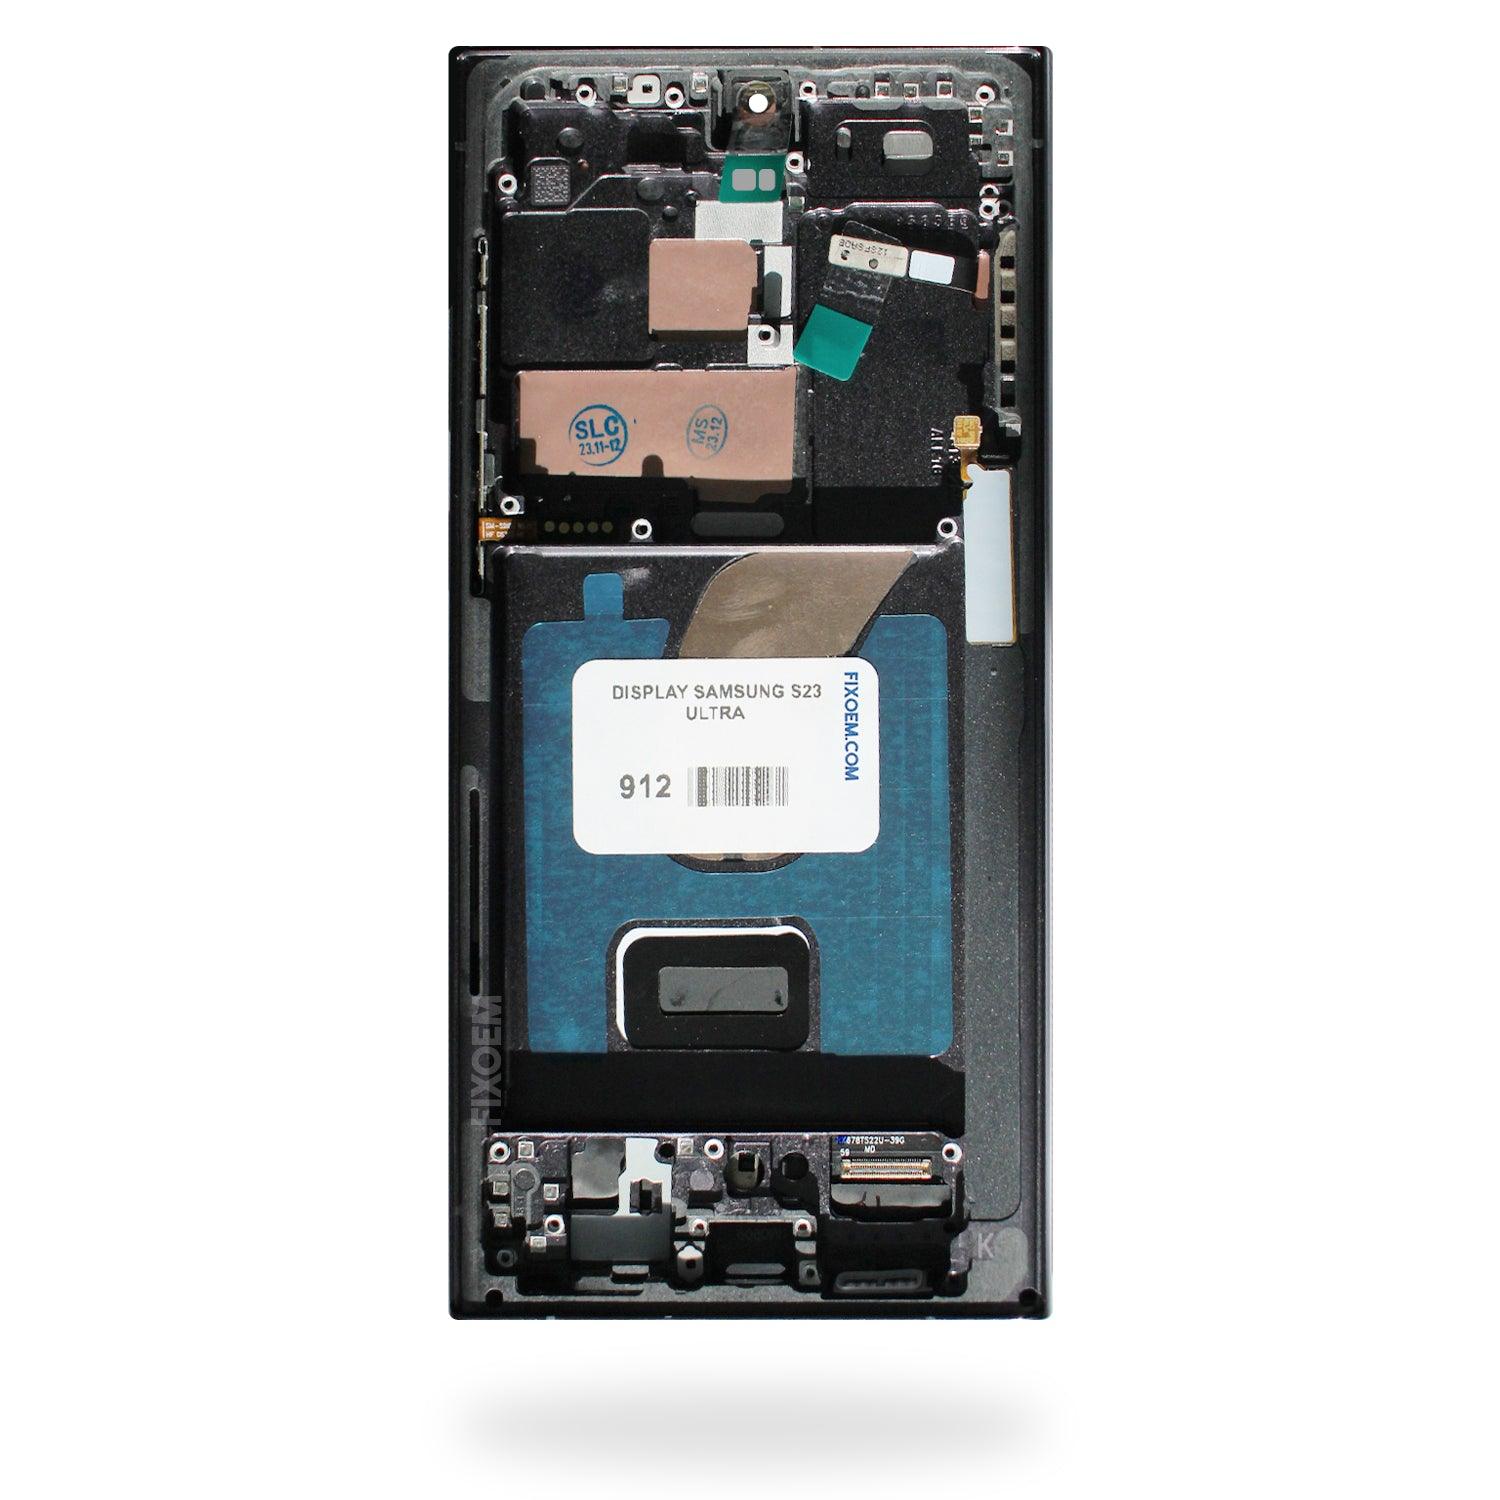 Display Samsung S23 Sm-S918 Ultra a solo $ 3160.00 Refaccion y puestos celulares, refurbish y microelectronica.- FixOEM